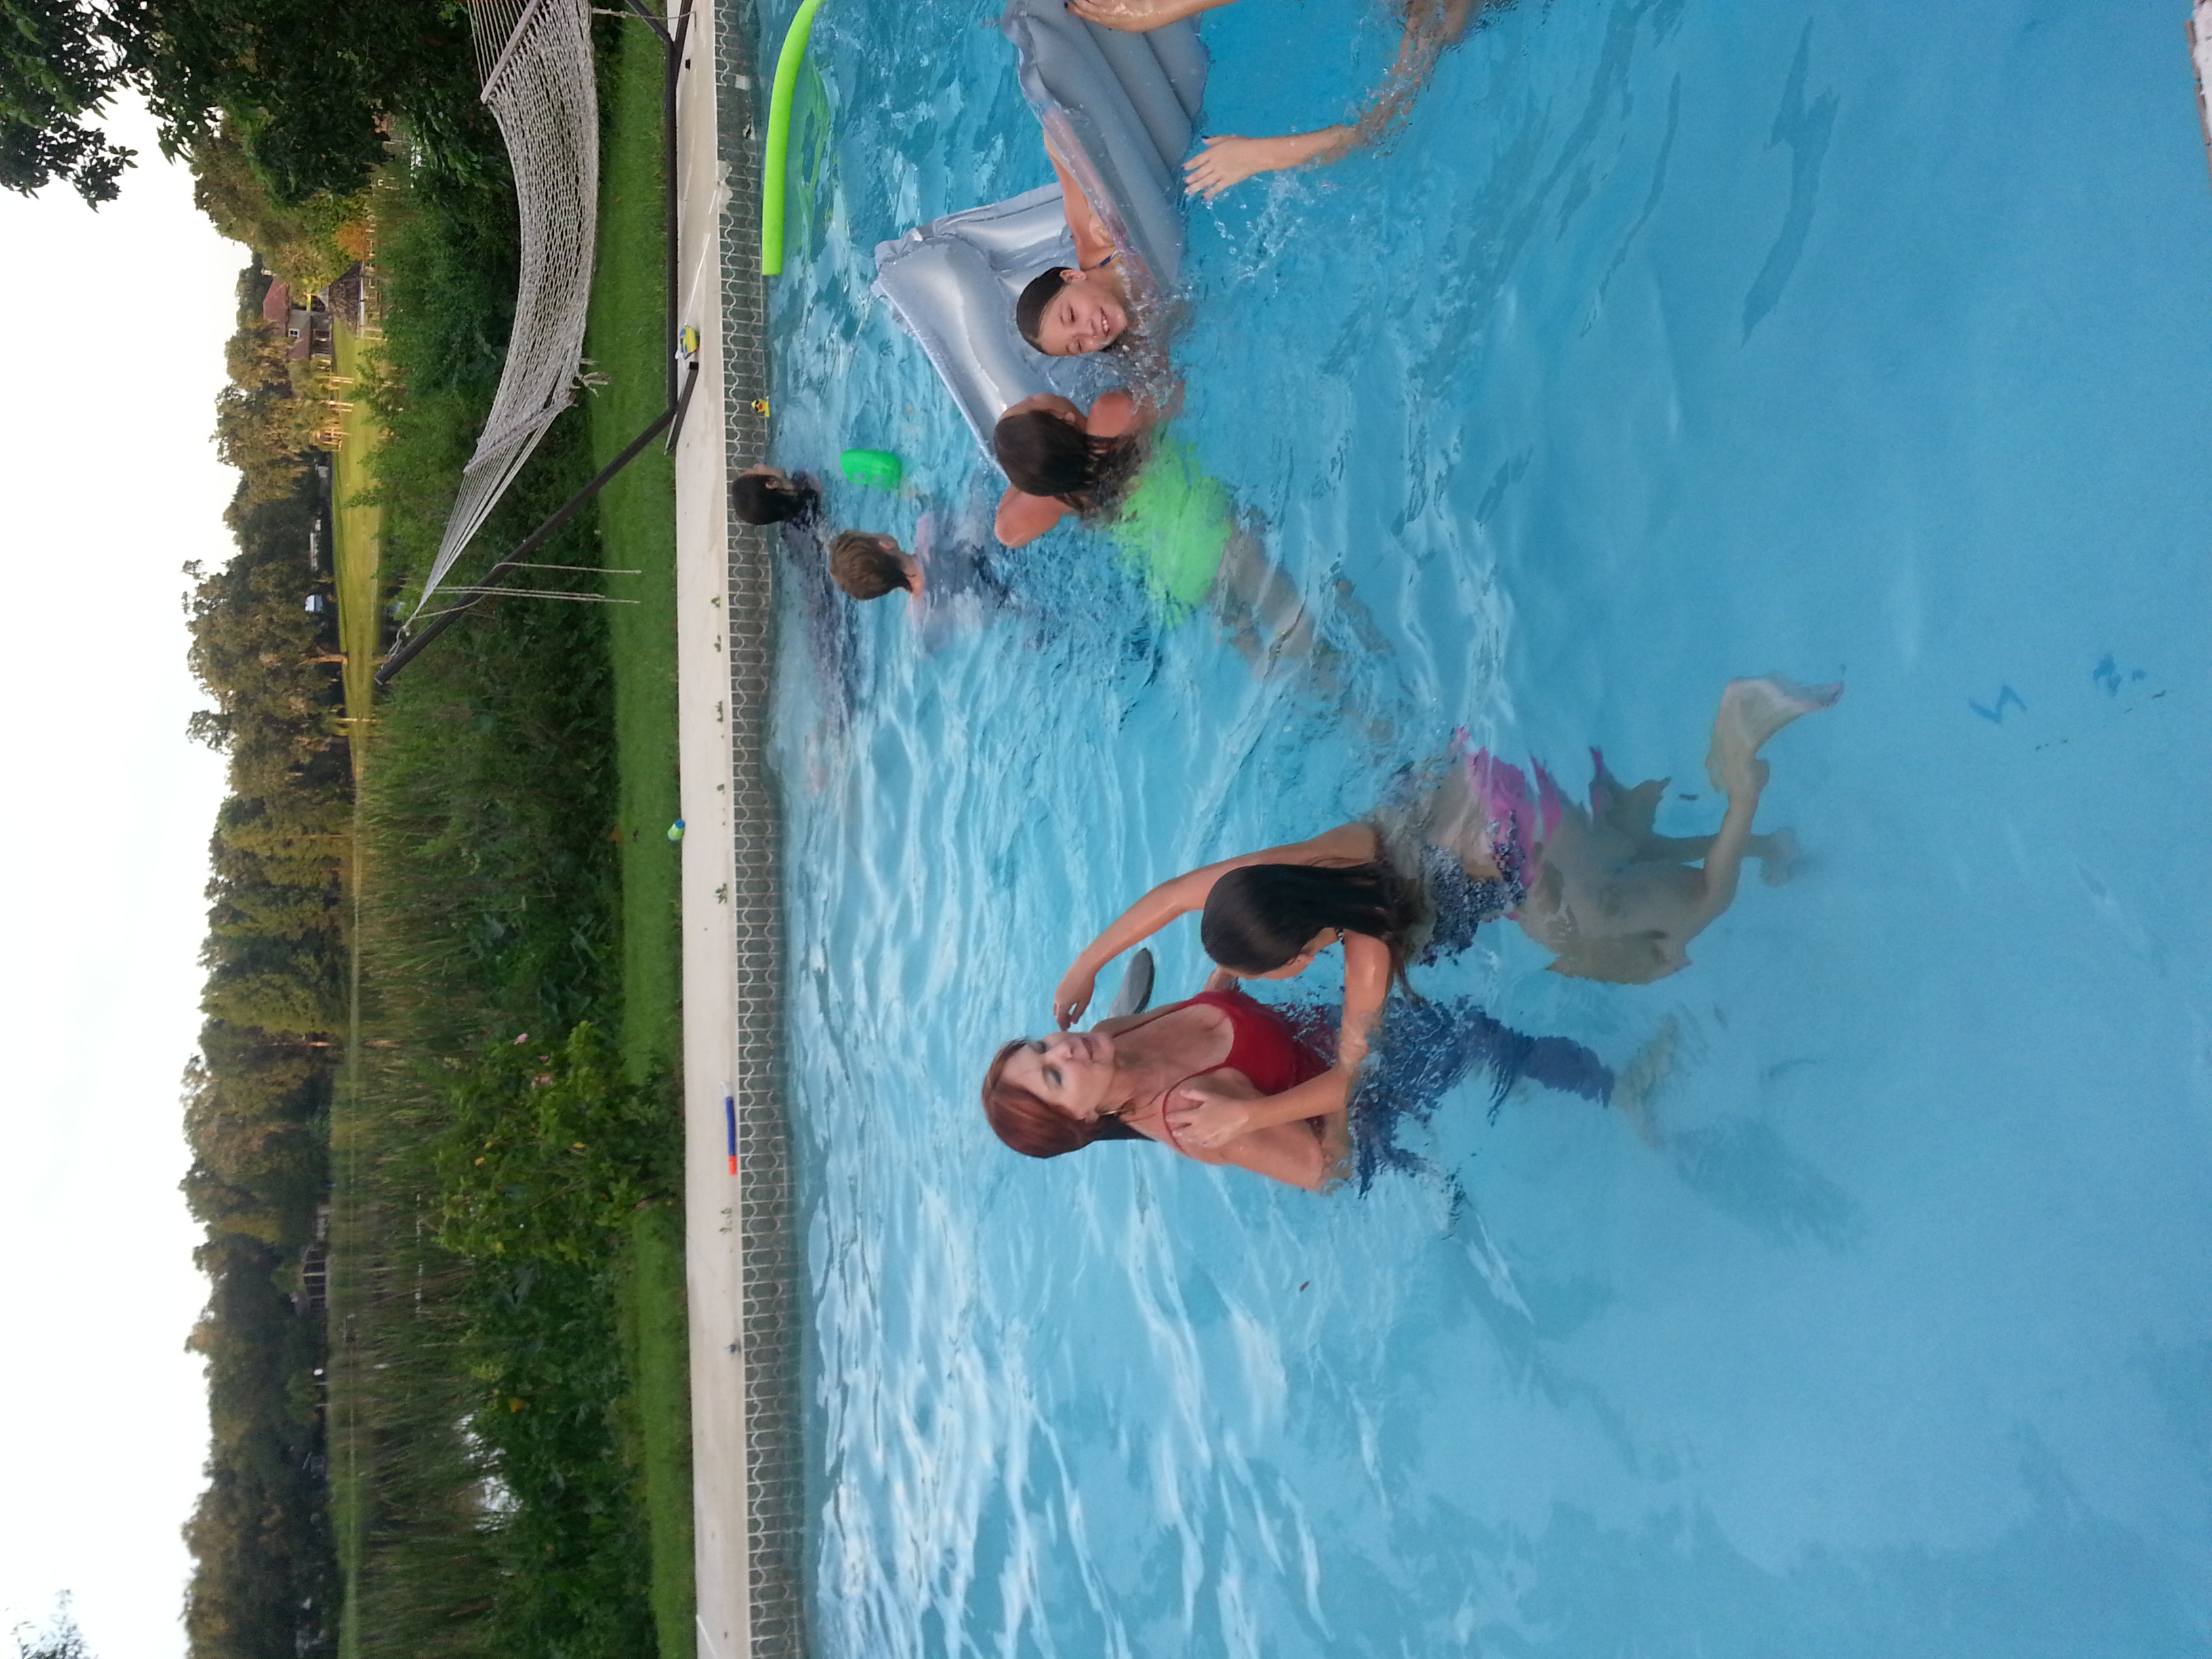 Fun time in the pool.